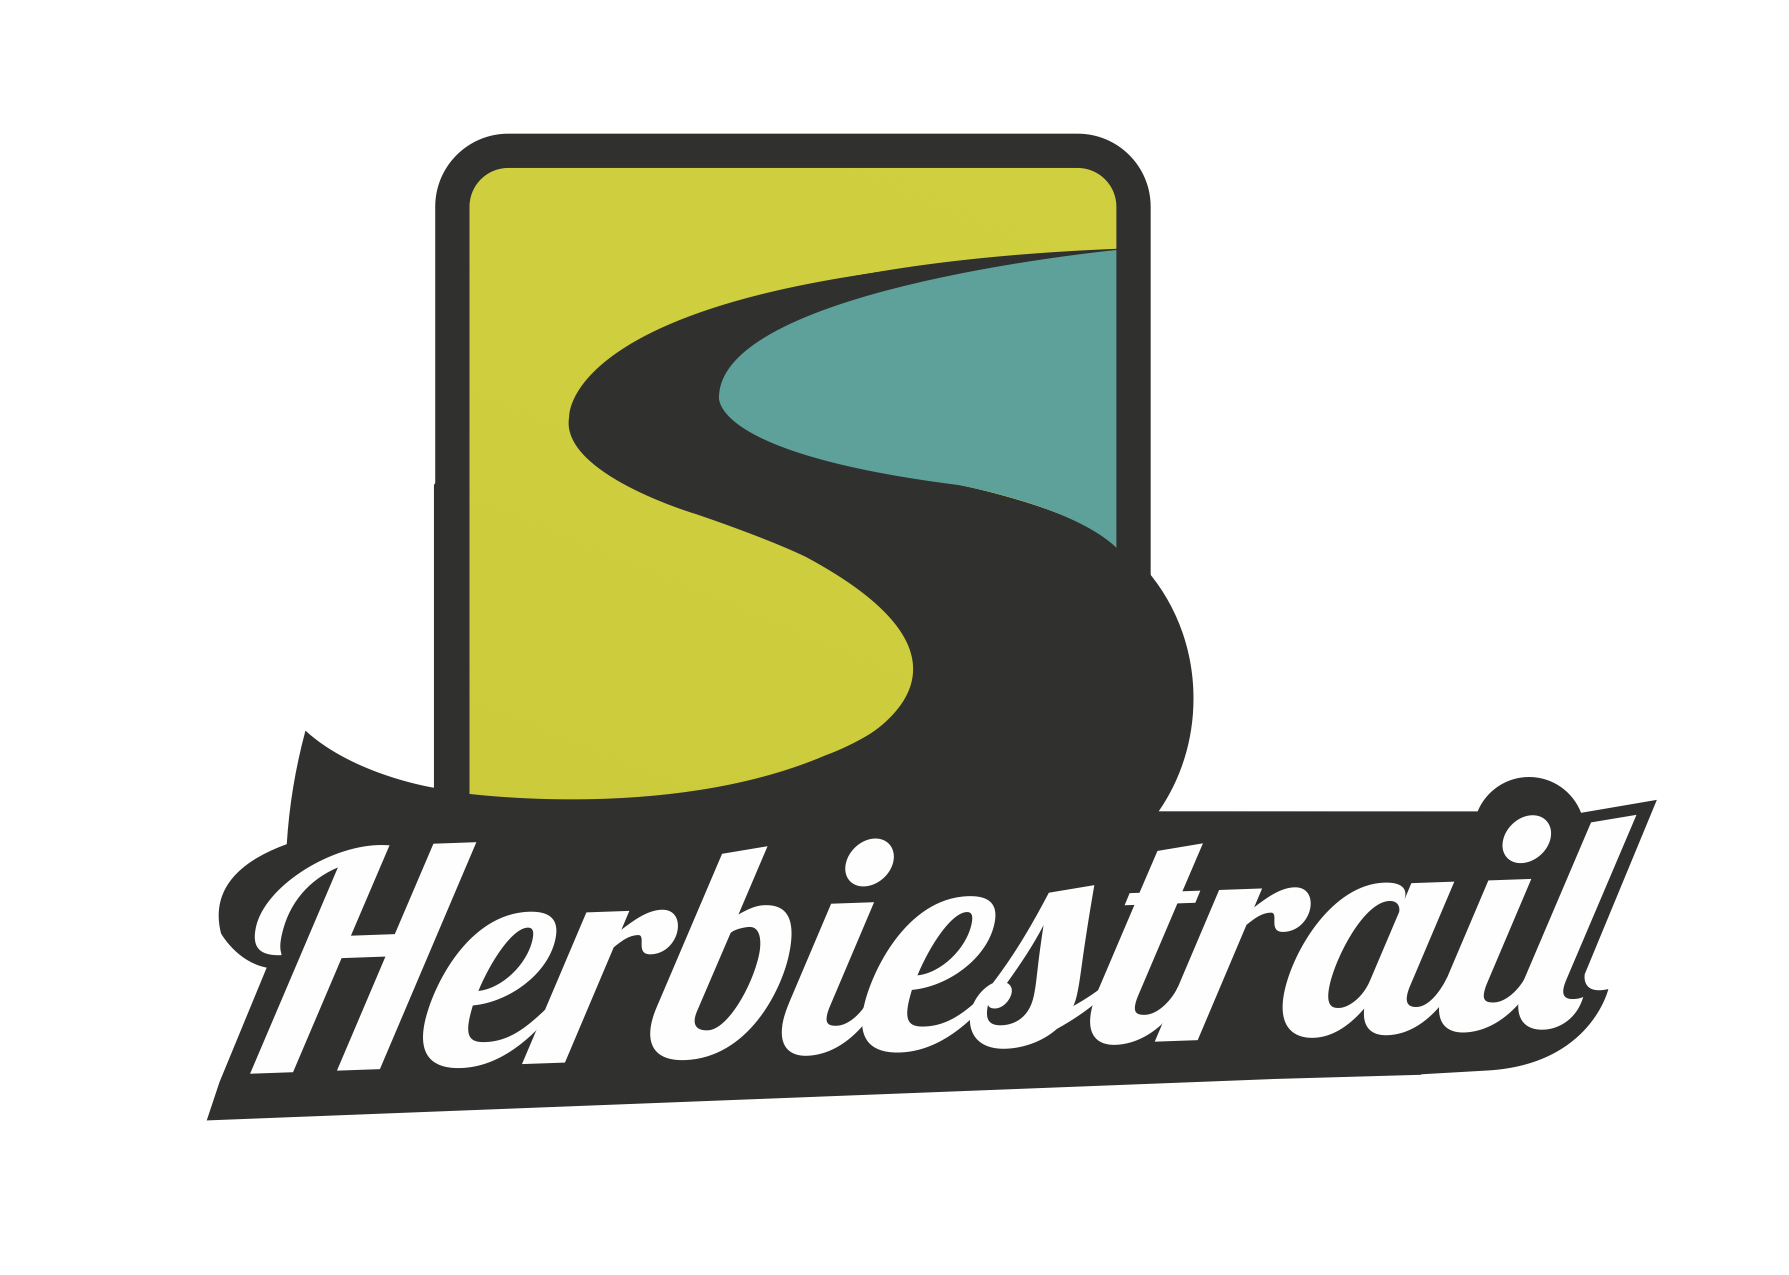 Herbiestrail